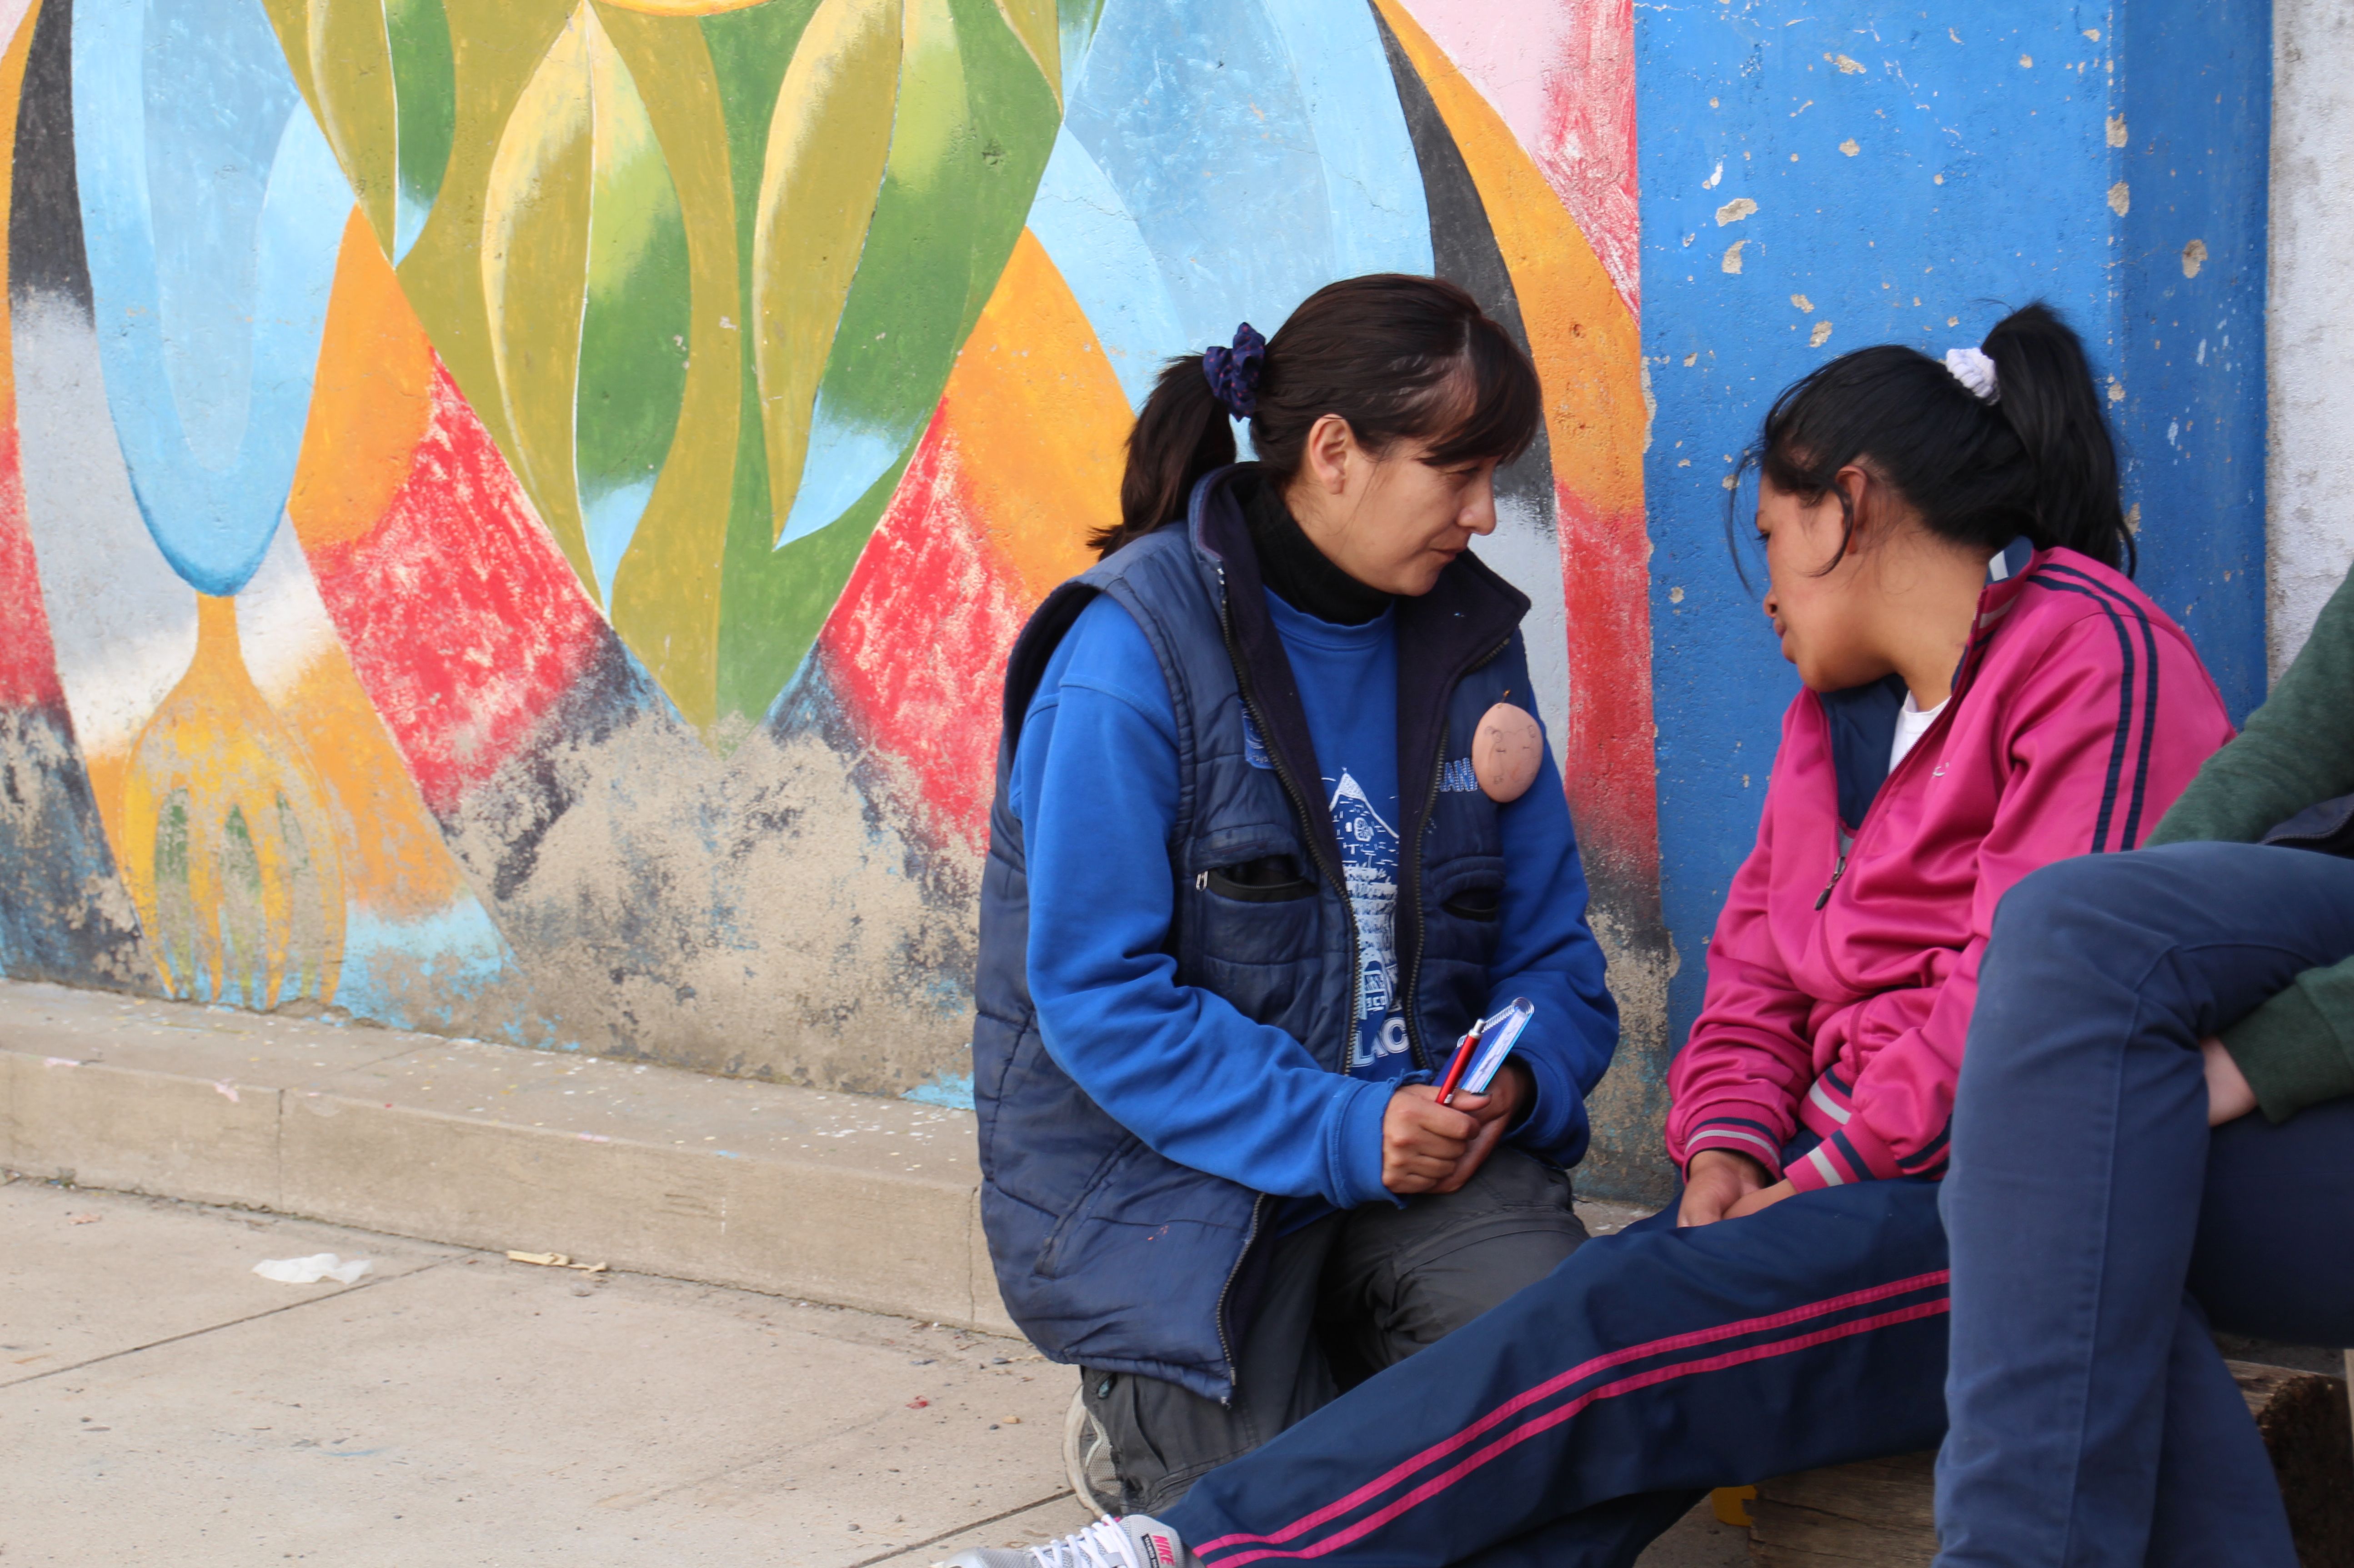 Eine Frau kniet neben einer jungen Frau die auf der Straße sitzt. Beide sind sich zugewandt und sprechen miteinander.